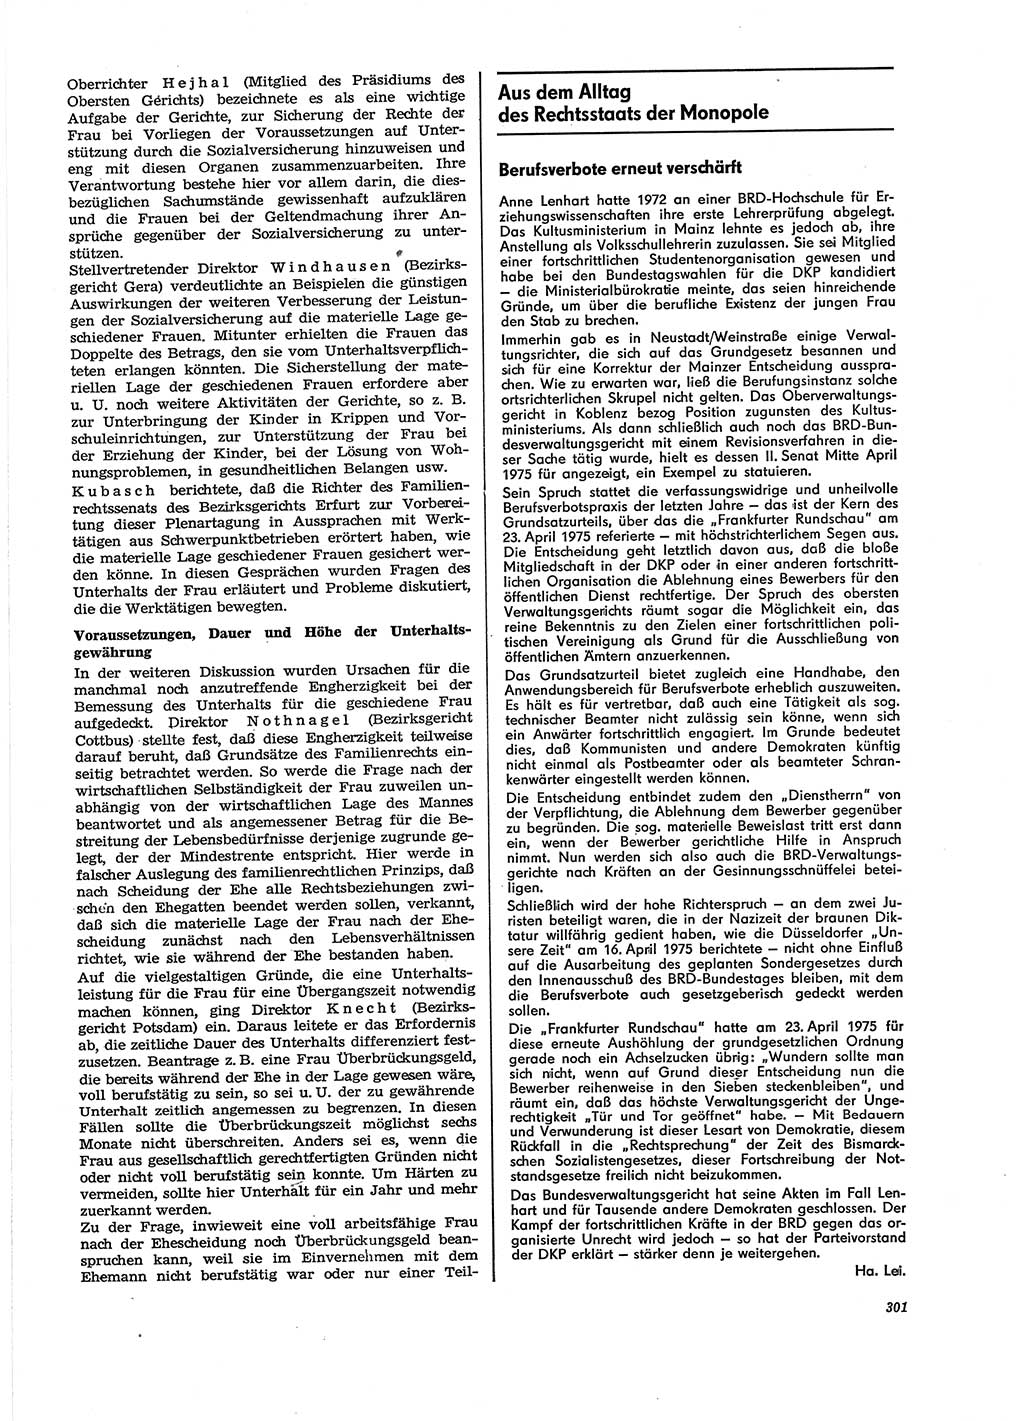 Neue Justiz (NJ), Zeitschrift für Recht und Rechtswissenschaft [Deutsche Demokratische Republik (DDR)], 29. Jahrgang 1975, Seite 301 (NJ DDR 1975, S. 301)